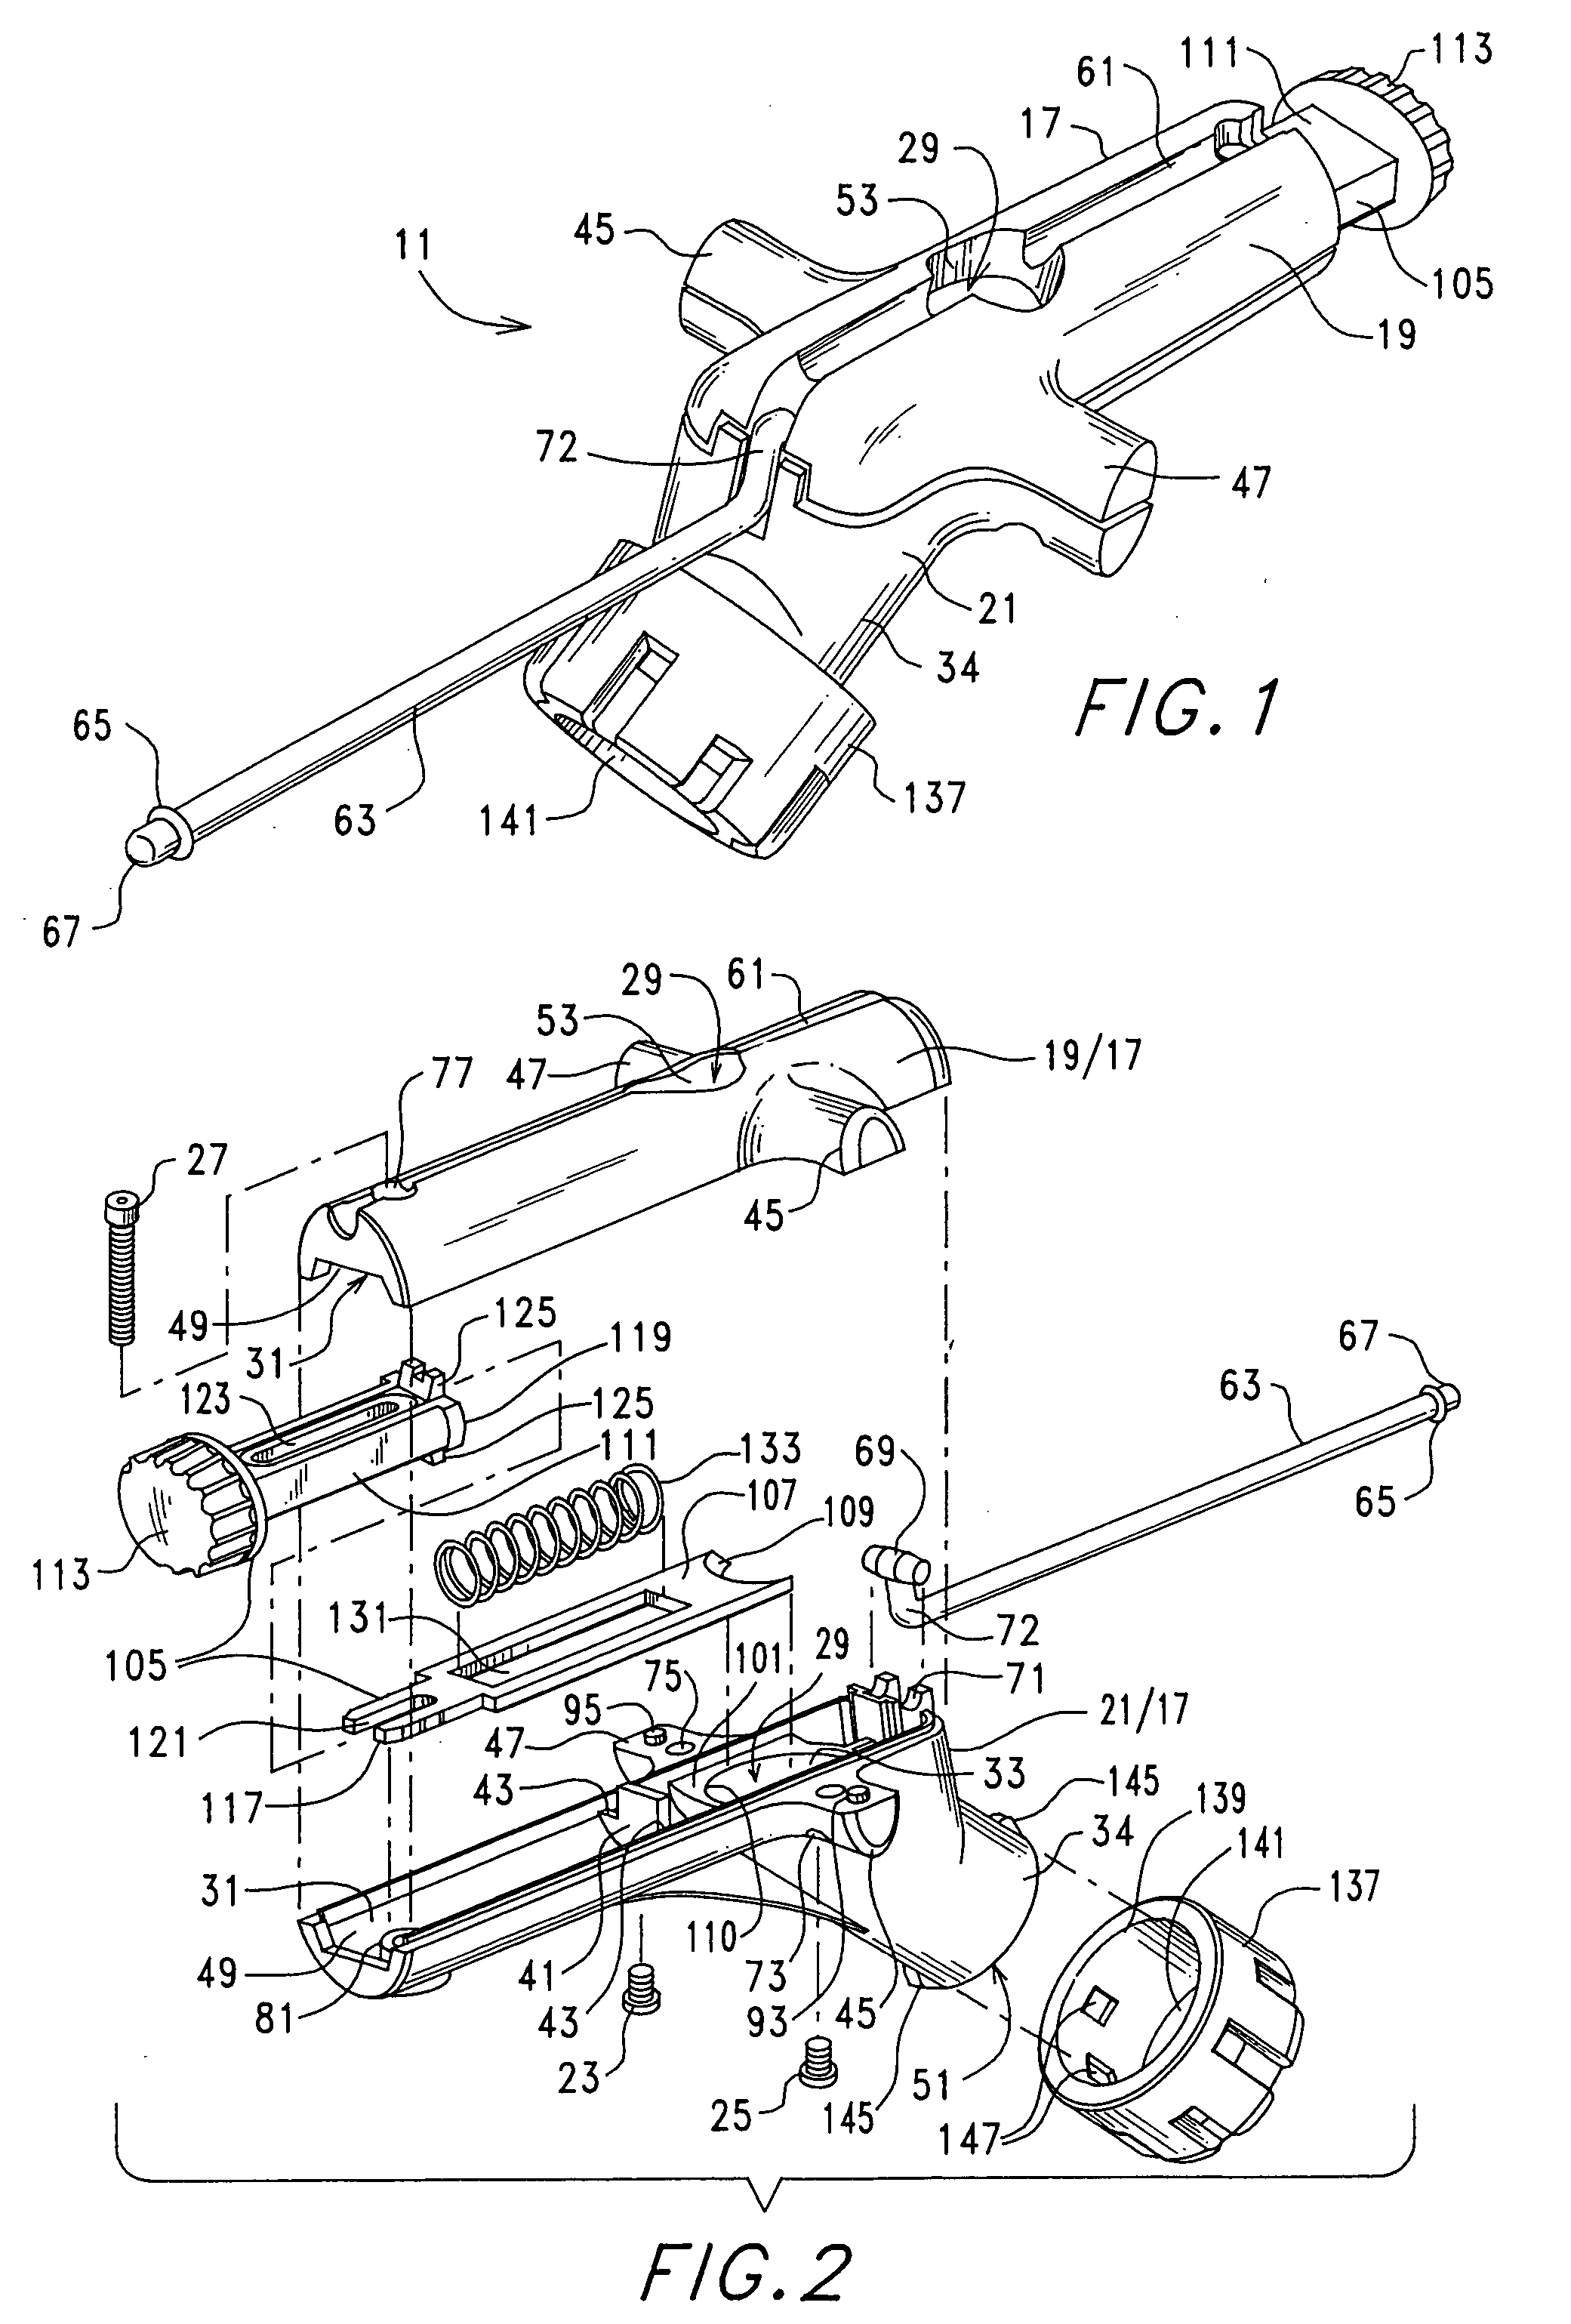 Dispensing tube opener